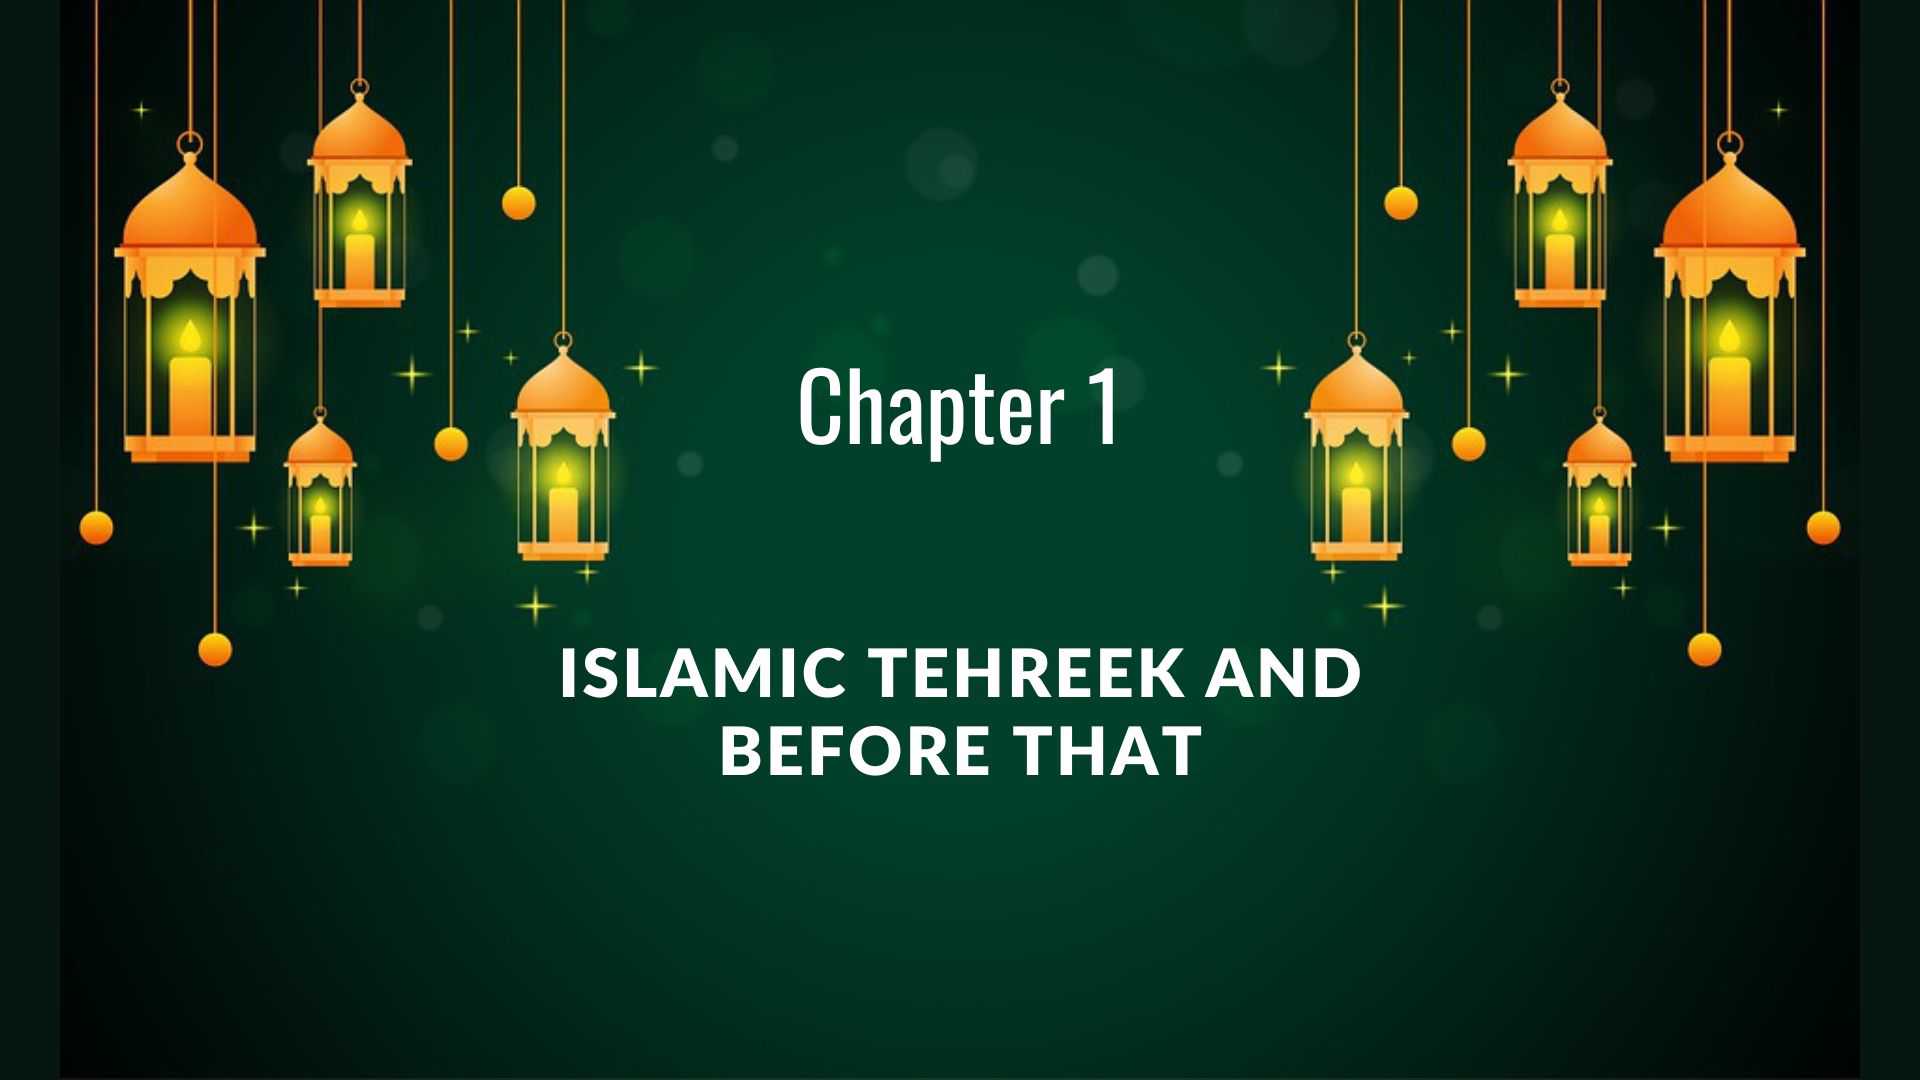 Islamic Tehreek and before that